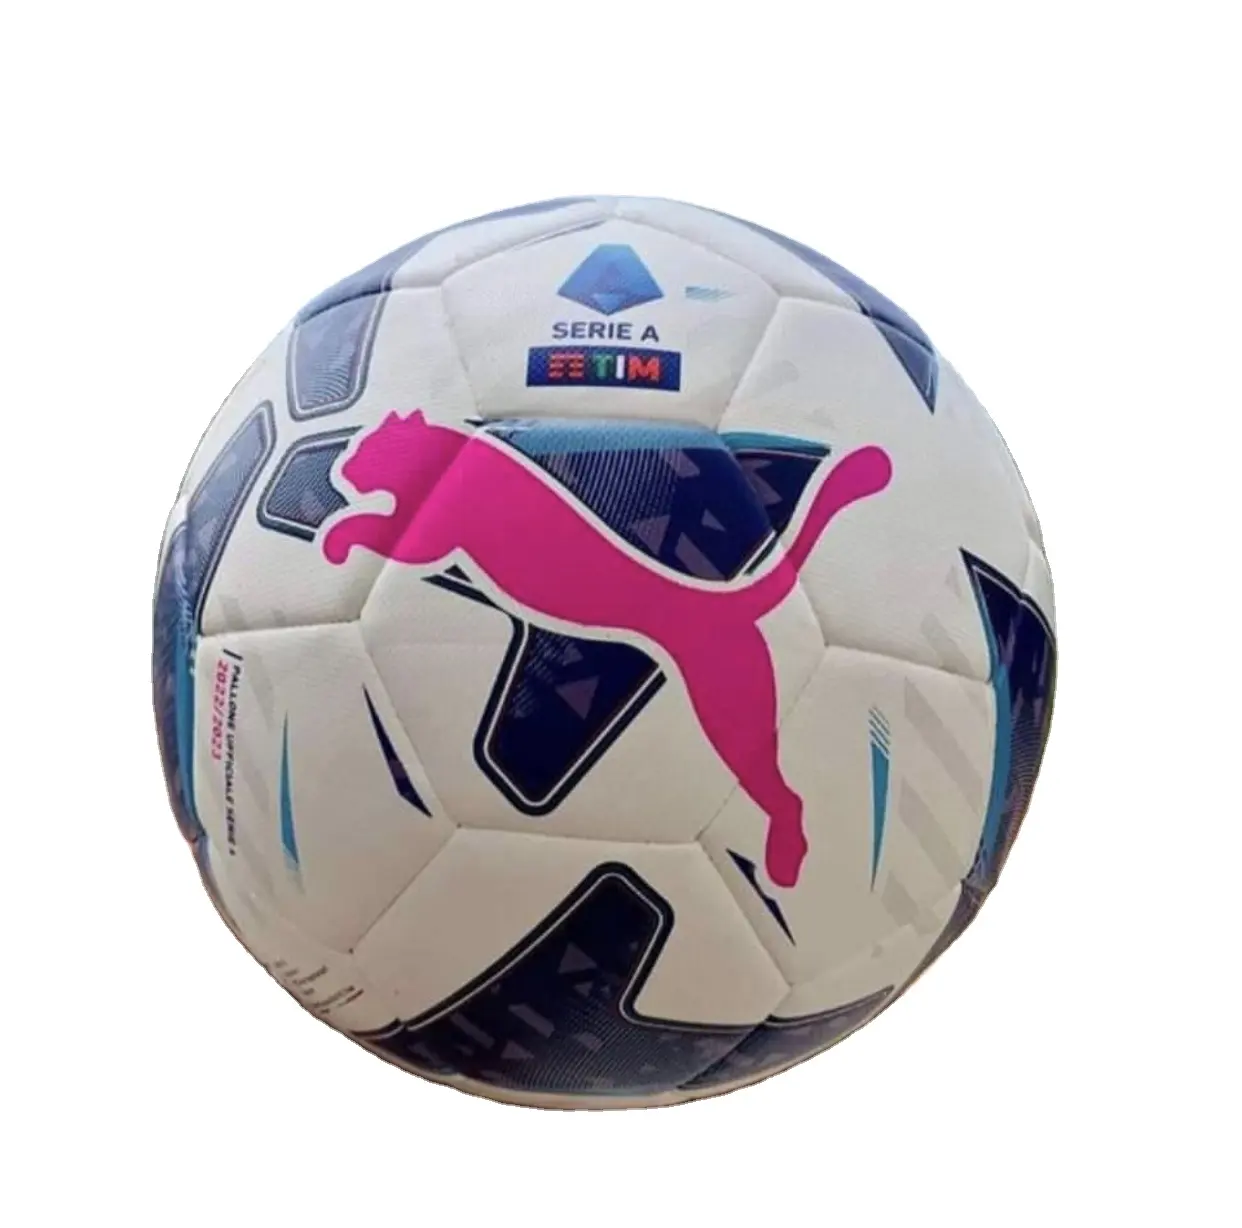 Méga Vente Meilleure Qualité PU PVC Taille 5 4 3 Pour Jouer Au Football Sports D'équipe Dans Les Écoles Formation Ballon De Football